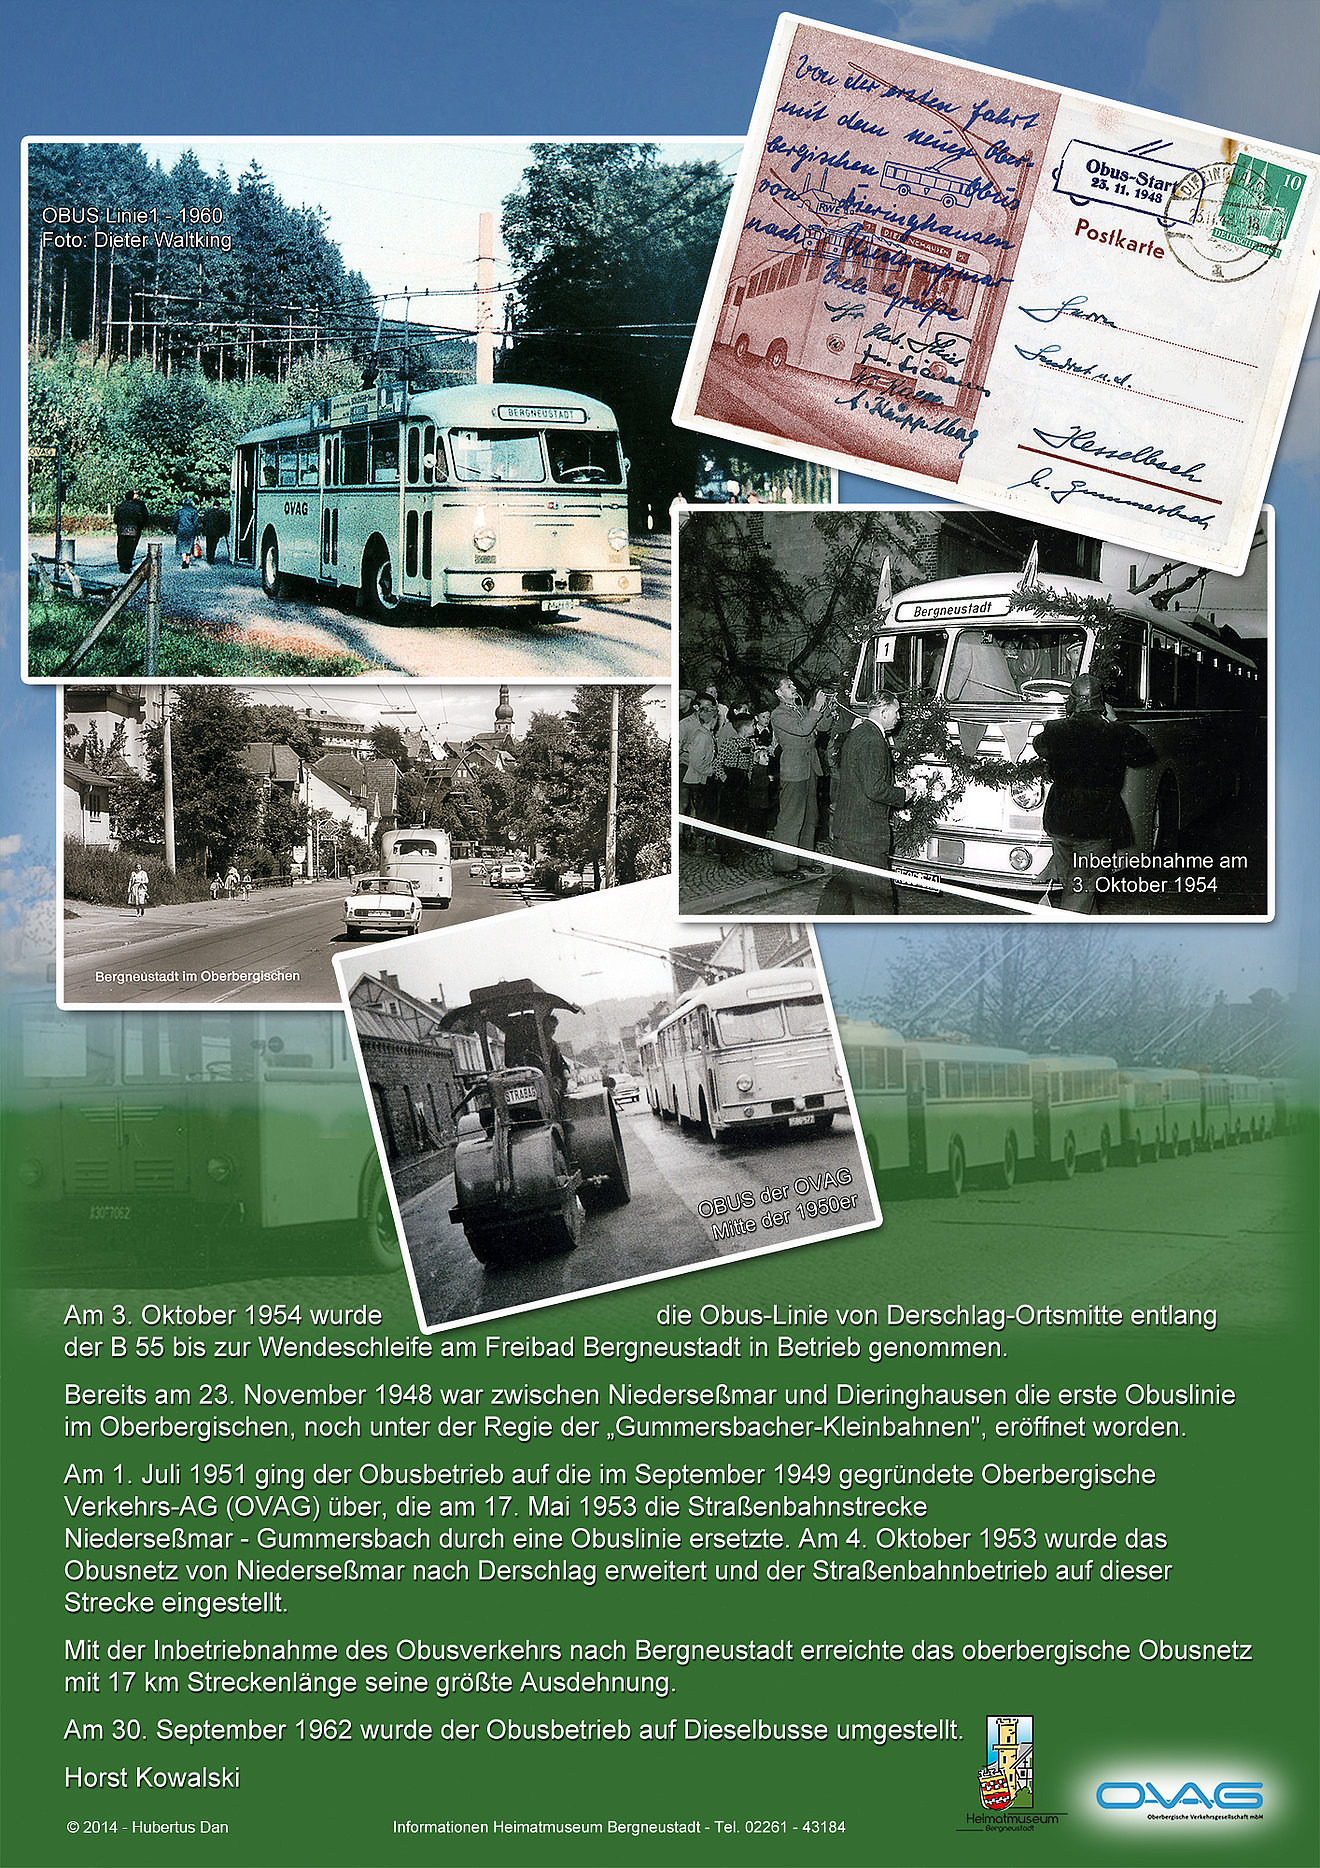 Vor 60 Jahren, am 30. September 1962 wurde der Obusbetrieb der OVAG auf Dieselbusse umgestellt